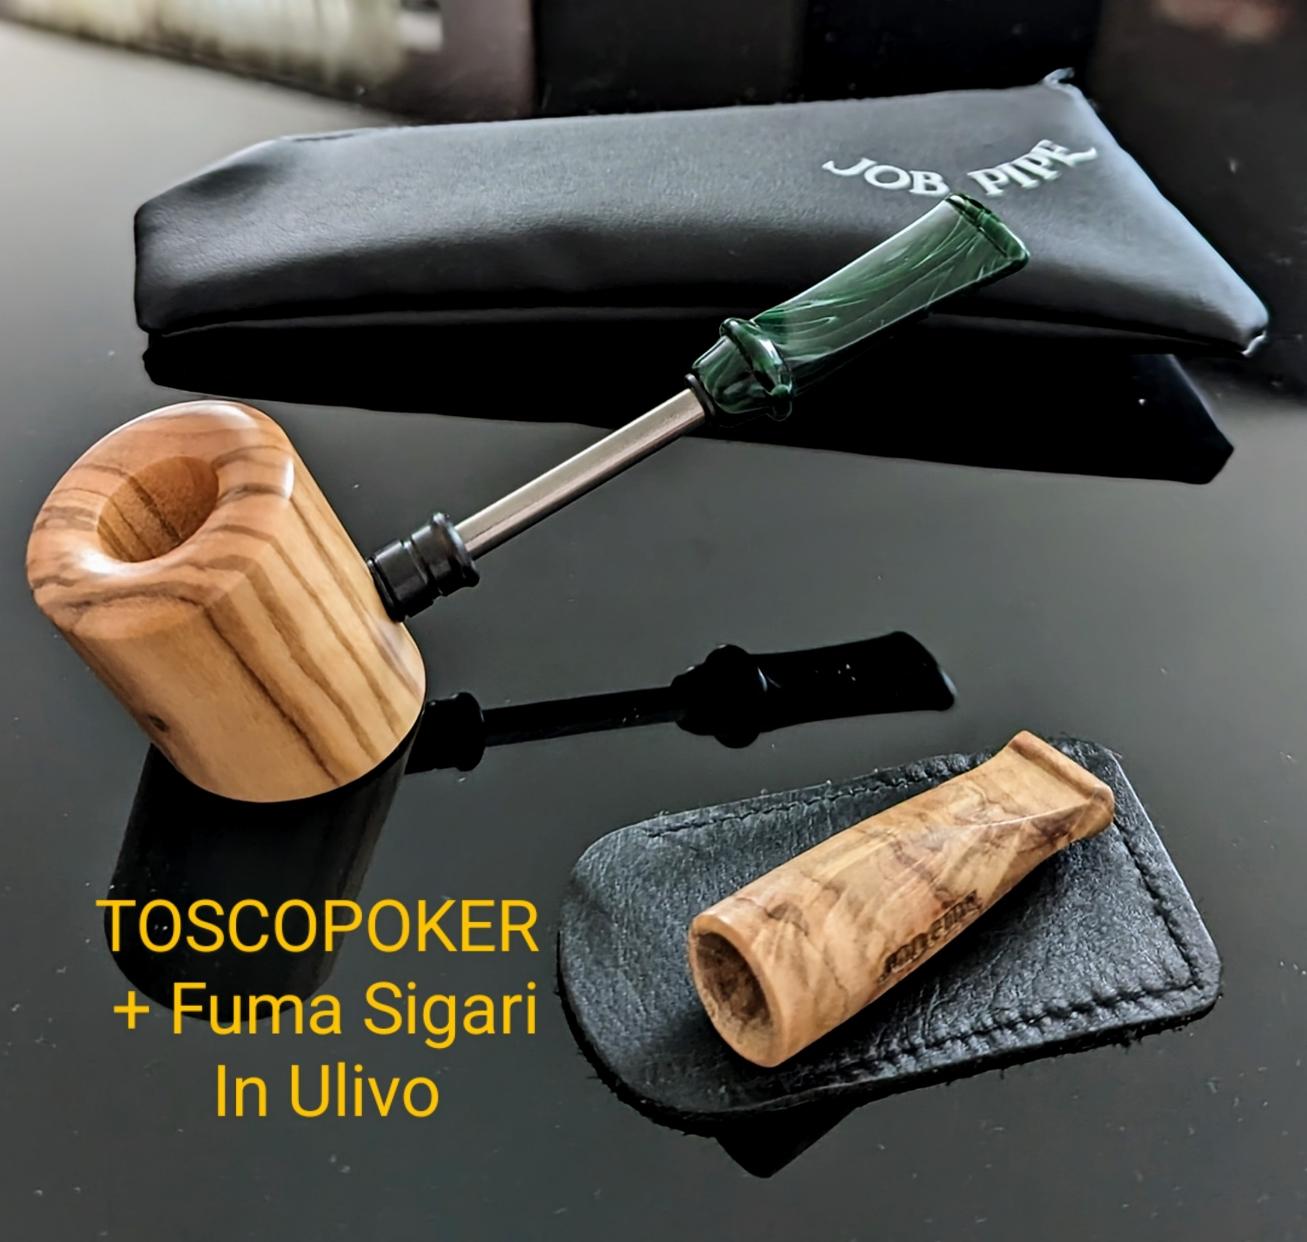 Job Pipe Toscopoker in Ulivo e Bocchino per sigari in ulivo